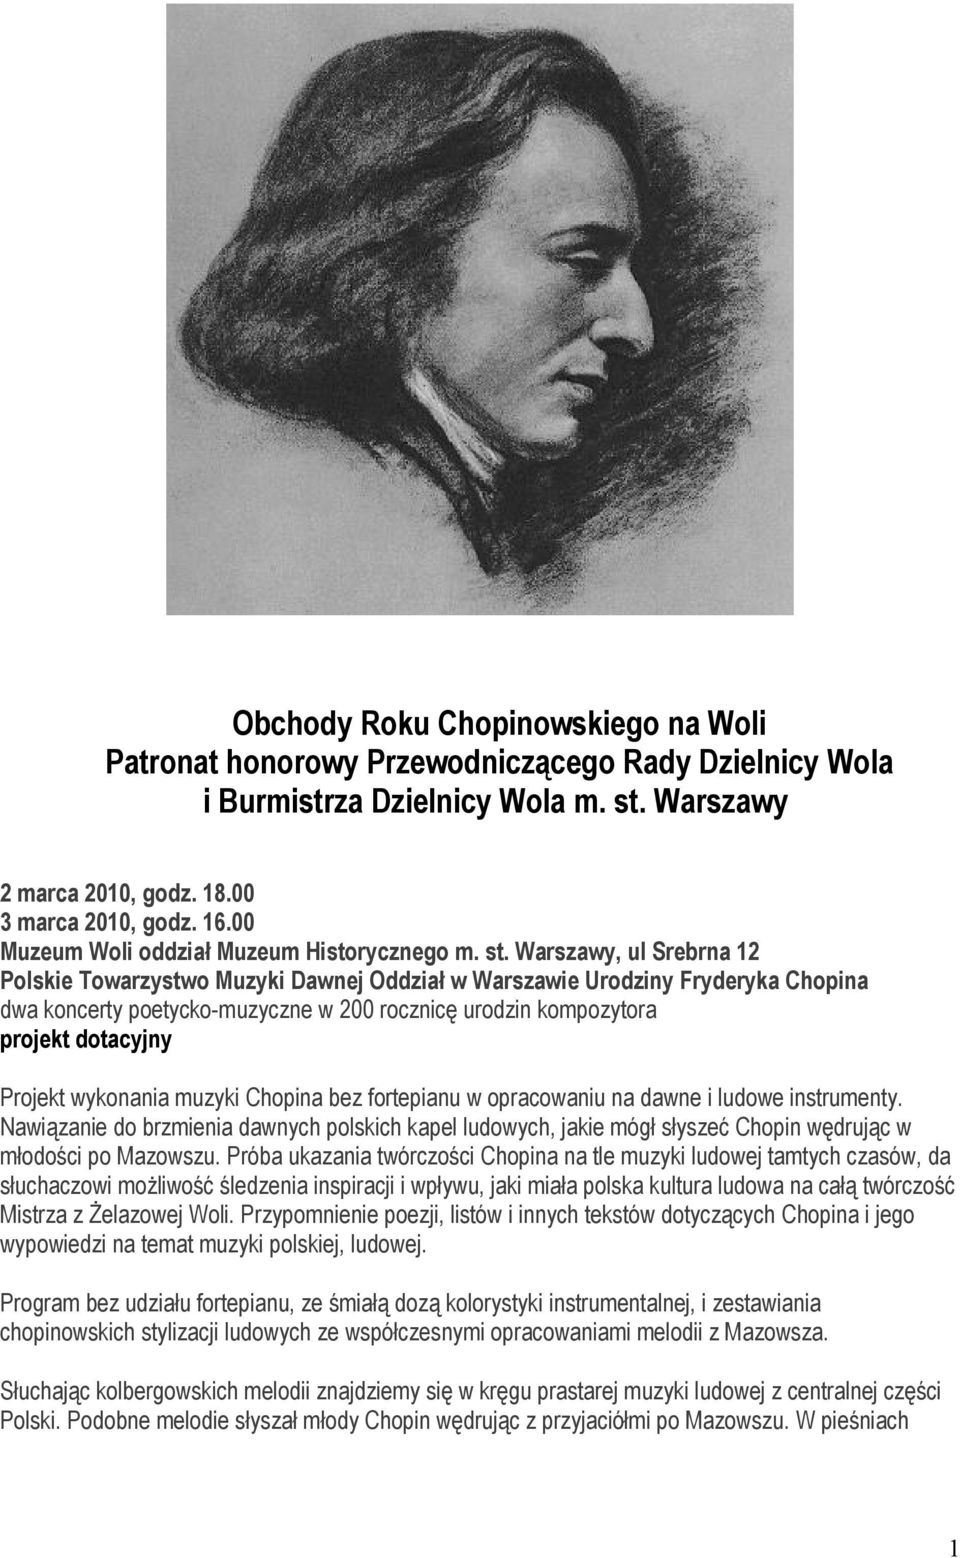 Warszawy, ul Srebrna 12 Polskie Towarzystwo Muzyki Dawnej Oddział w Warszawie Urodziny Fryderyka Chopina dwa koncerty poetycko-muzyczne w 200 rocznicę urodzin kompozytora projekt dotacyjny Projekt